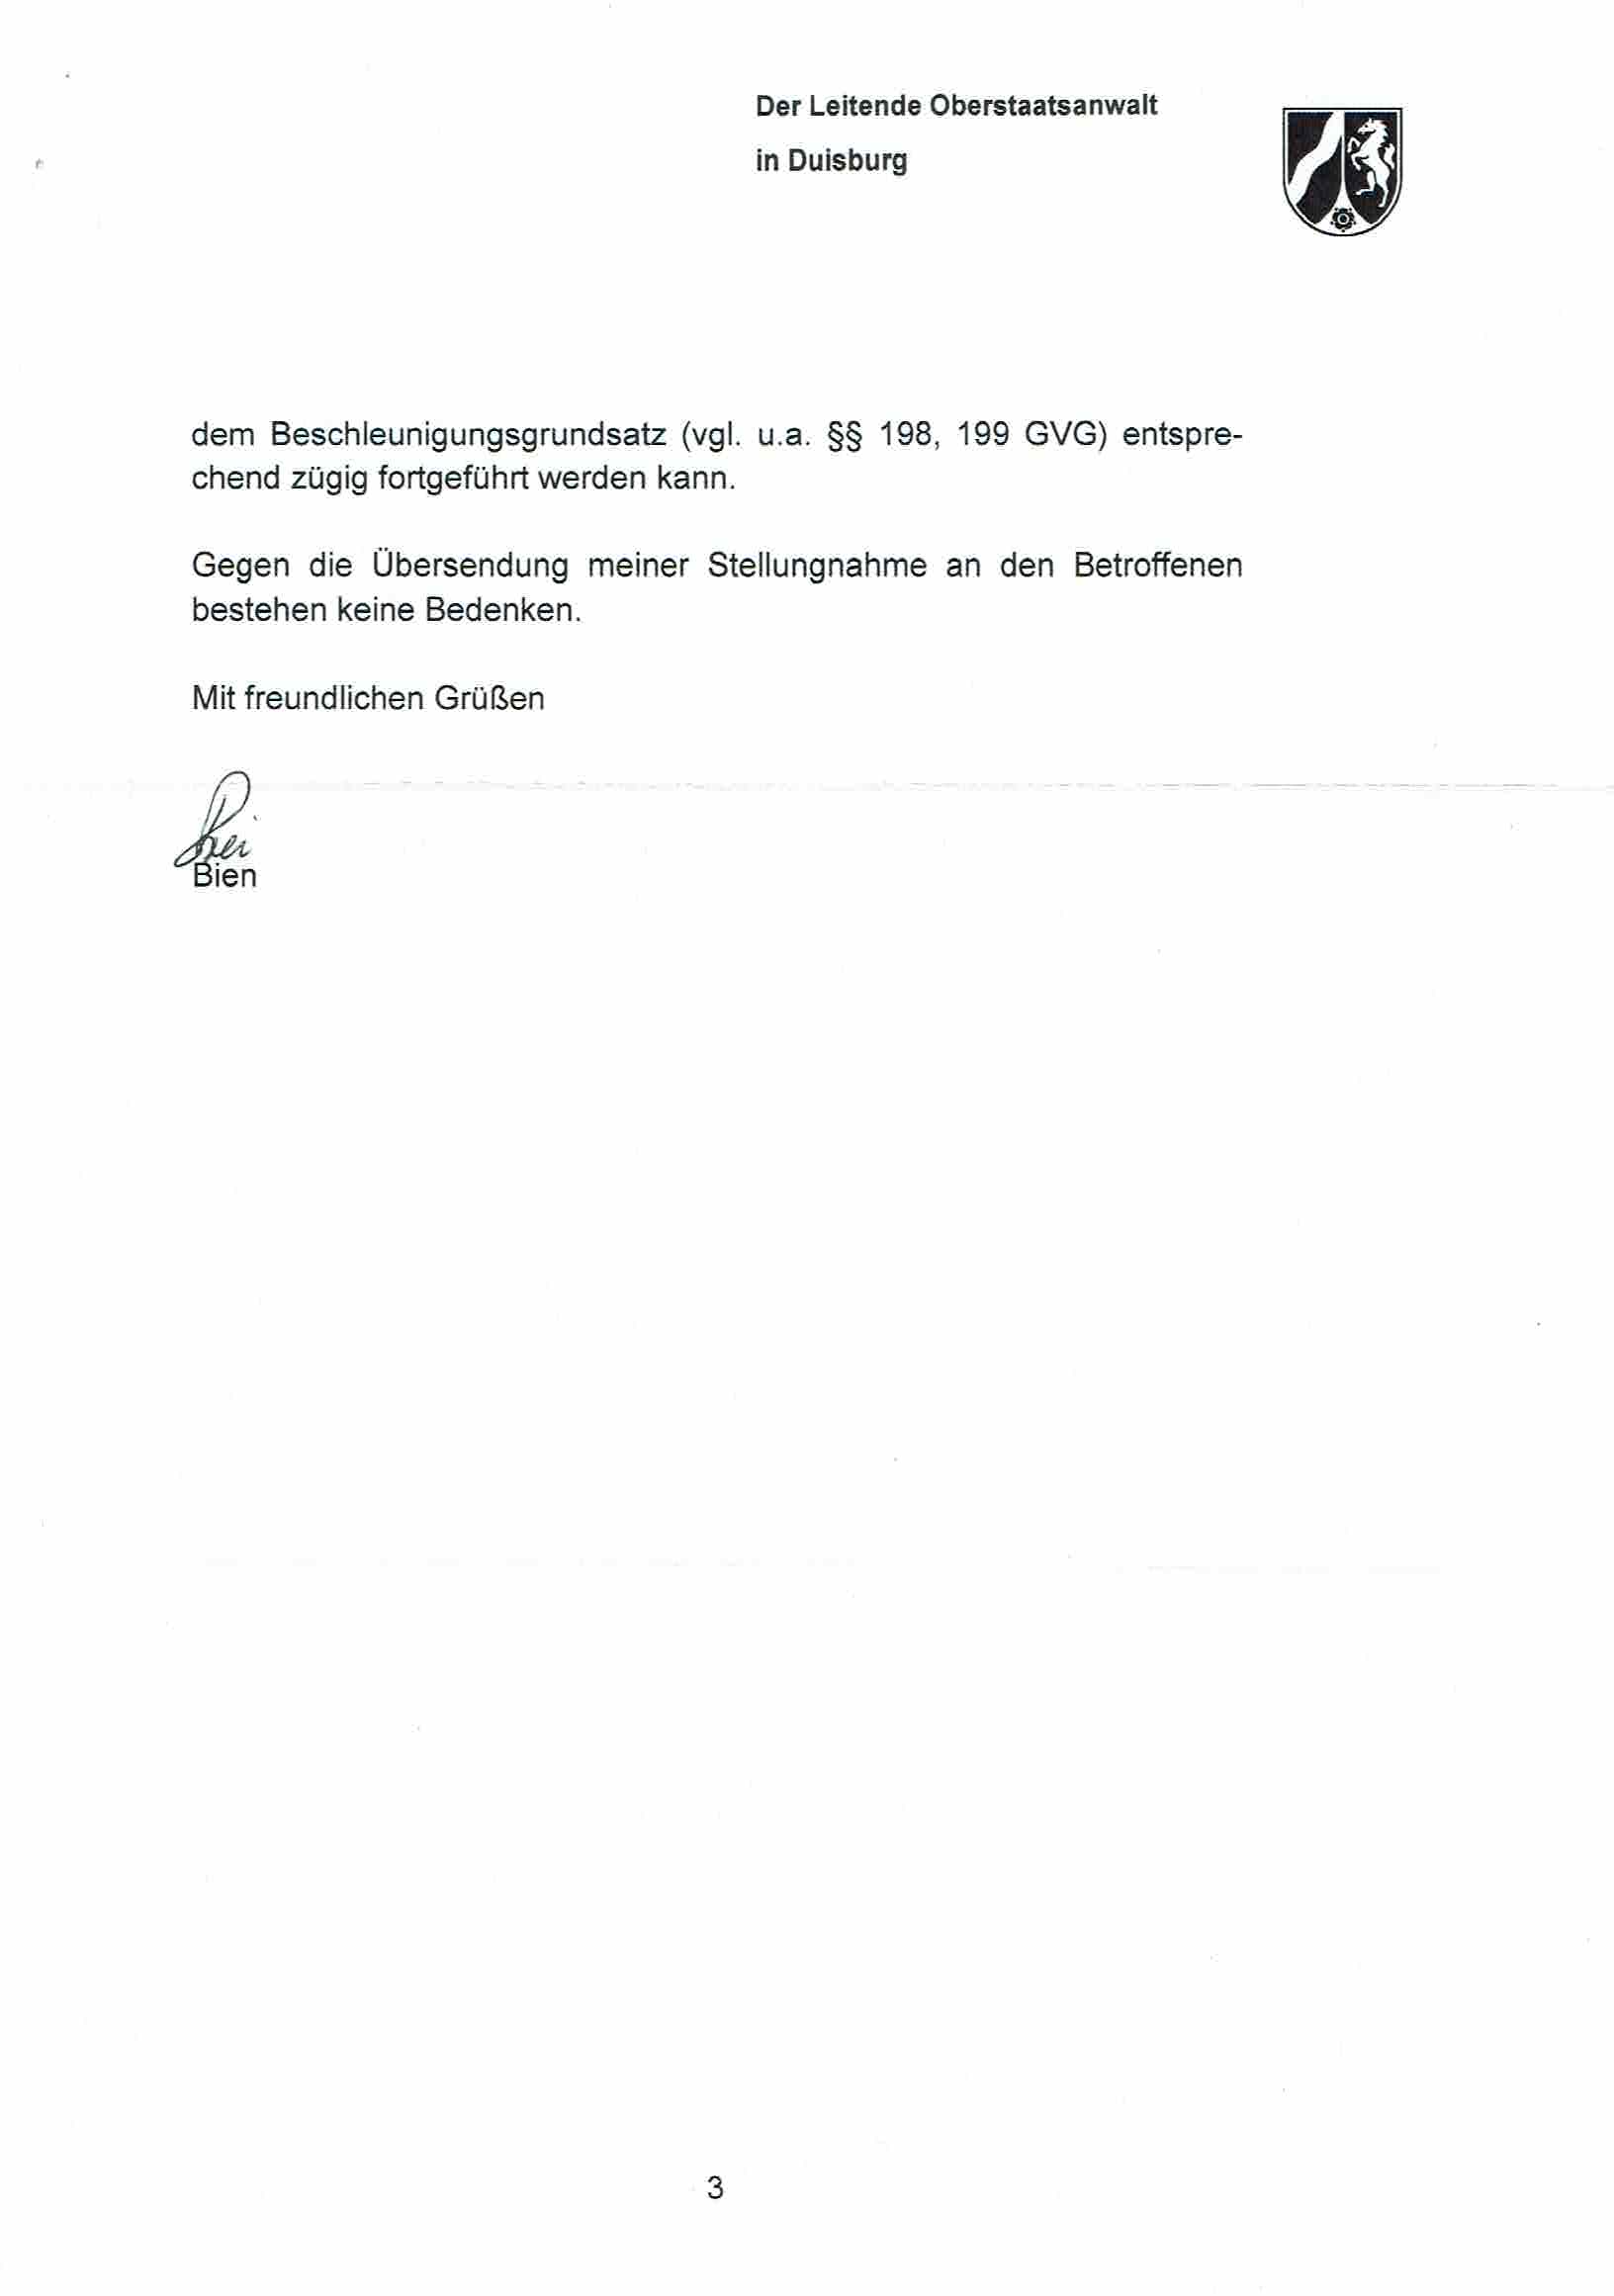 Nachricht der Landesbeauftragen für Datenschutz und Informationsfreiheit Nordrhein-Westfalen vom 30.05.2017, Anlage S. 3